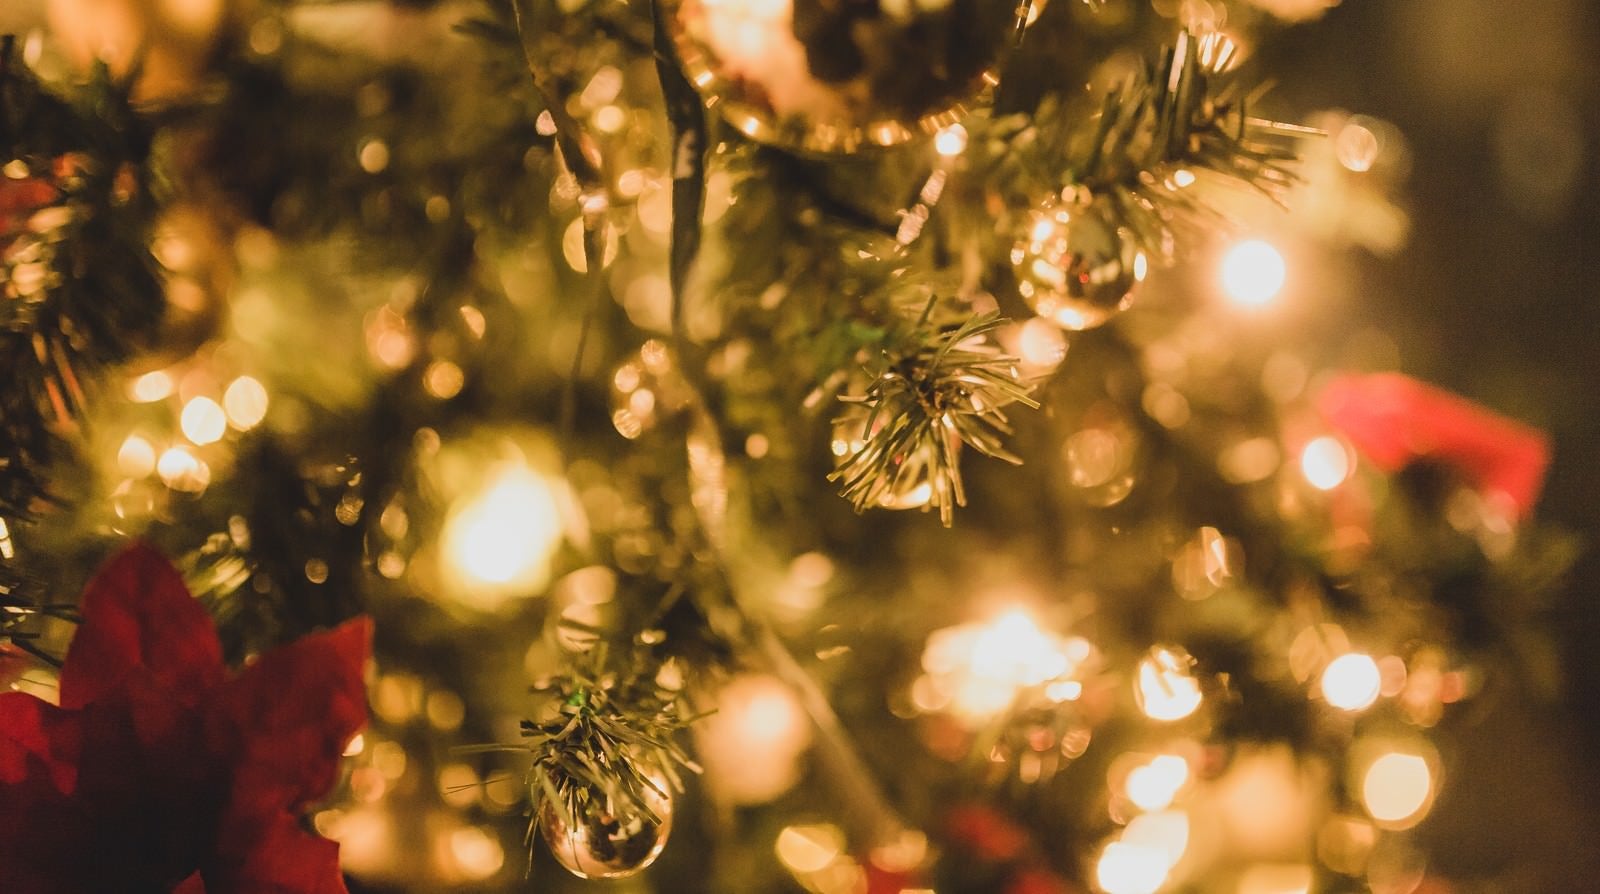 「クリスマスツリーと装飾」の写真